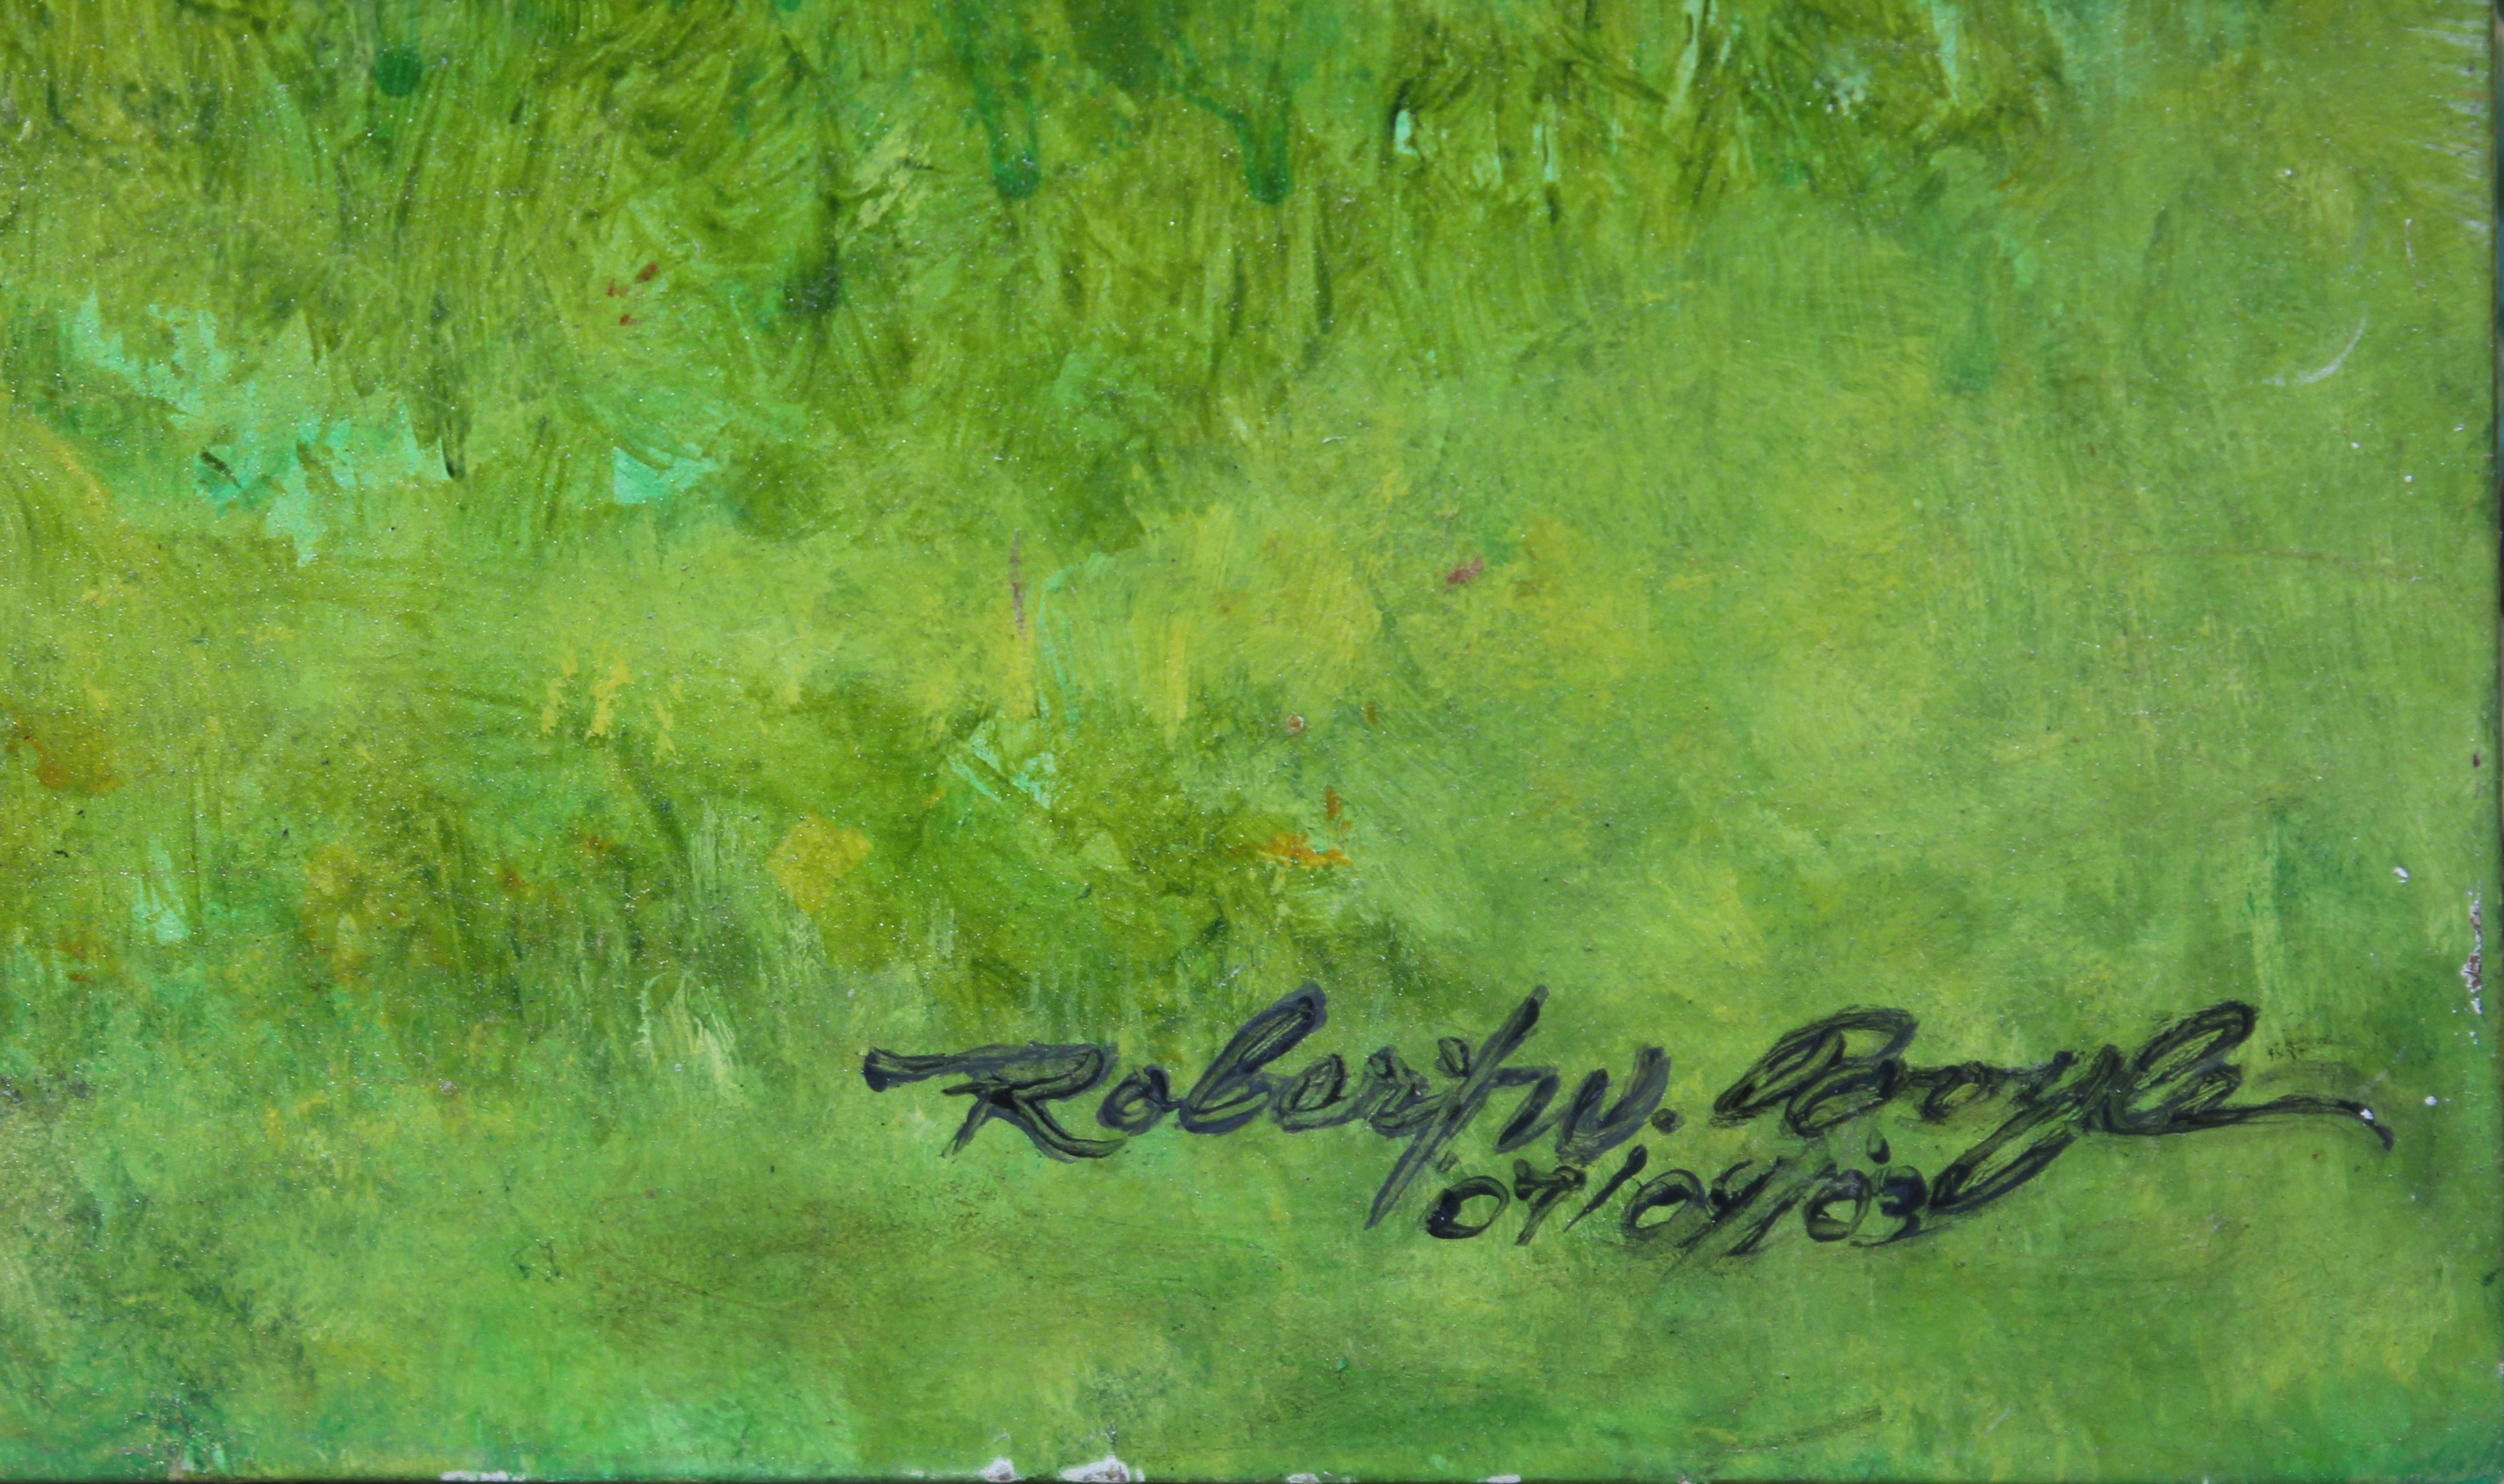 Impressionistische Landschaft einer Waldhütte im Herbst, wenn sich die Blätter verfärben, vom Künstler Robert W. Boyle. Gemälde in Öl auf Leinwand, datiert 2003. Signiert und datiert in der rechten unteren Ecke.

Biografie des Künstlers:
Robert W.